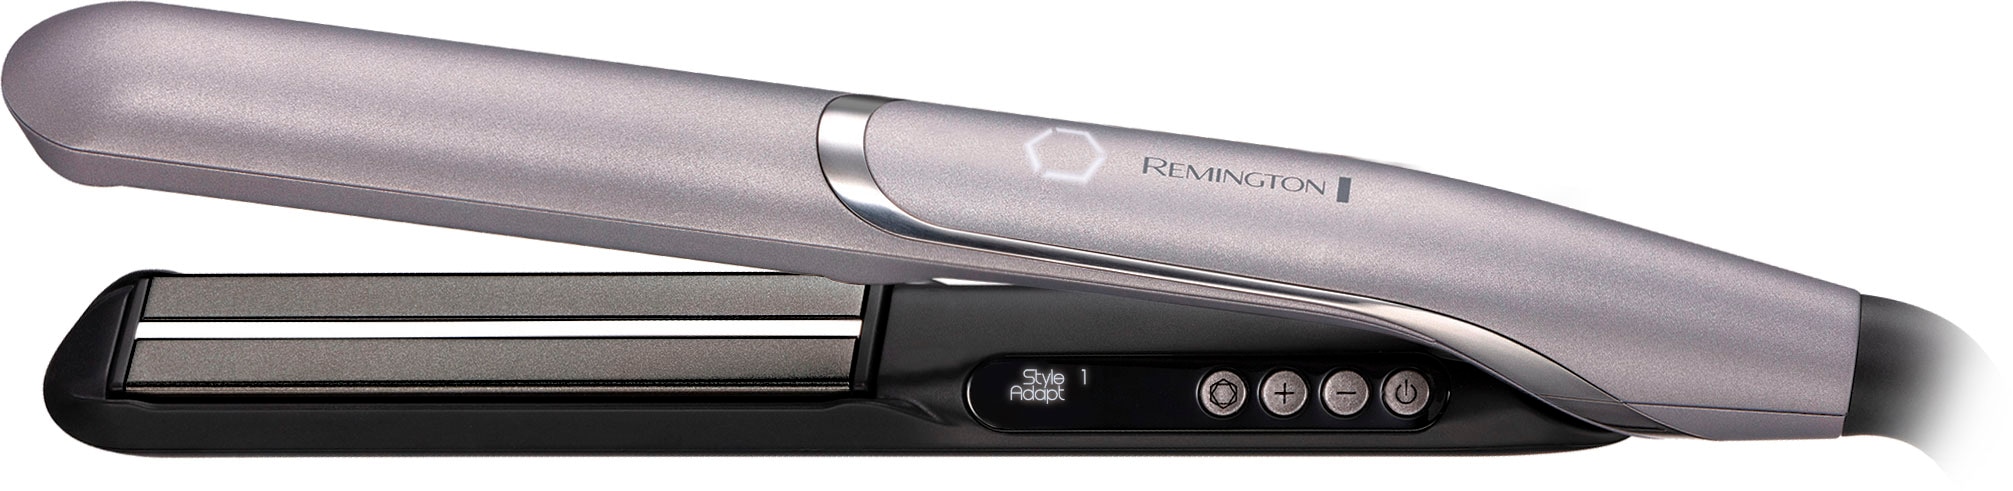 Memory Haarglätter, S9880«, Funktion, StyleAdapt™ Remington Glätteisen Keramik-Beschichtung, bestellen 2 You™ Nutzerprofile lernfähiger »PROluxe